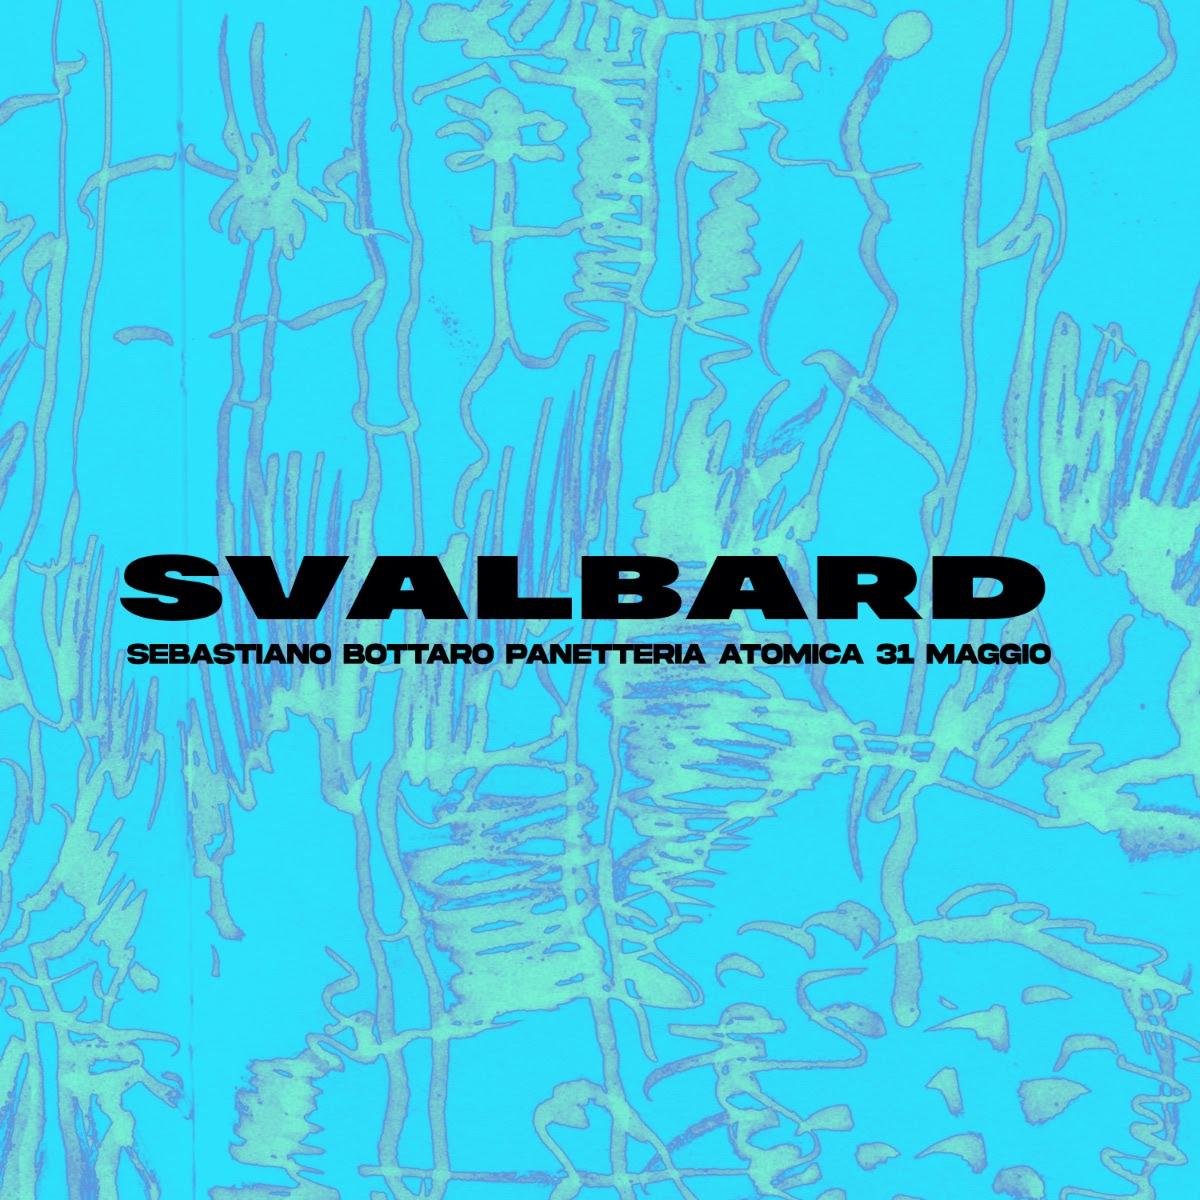 Sebastiano Bottaro - Svalbard